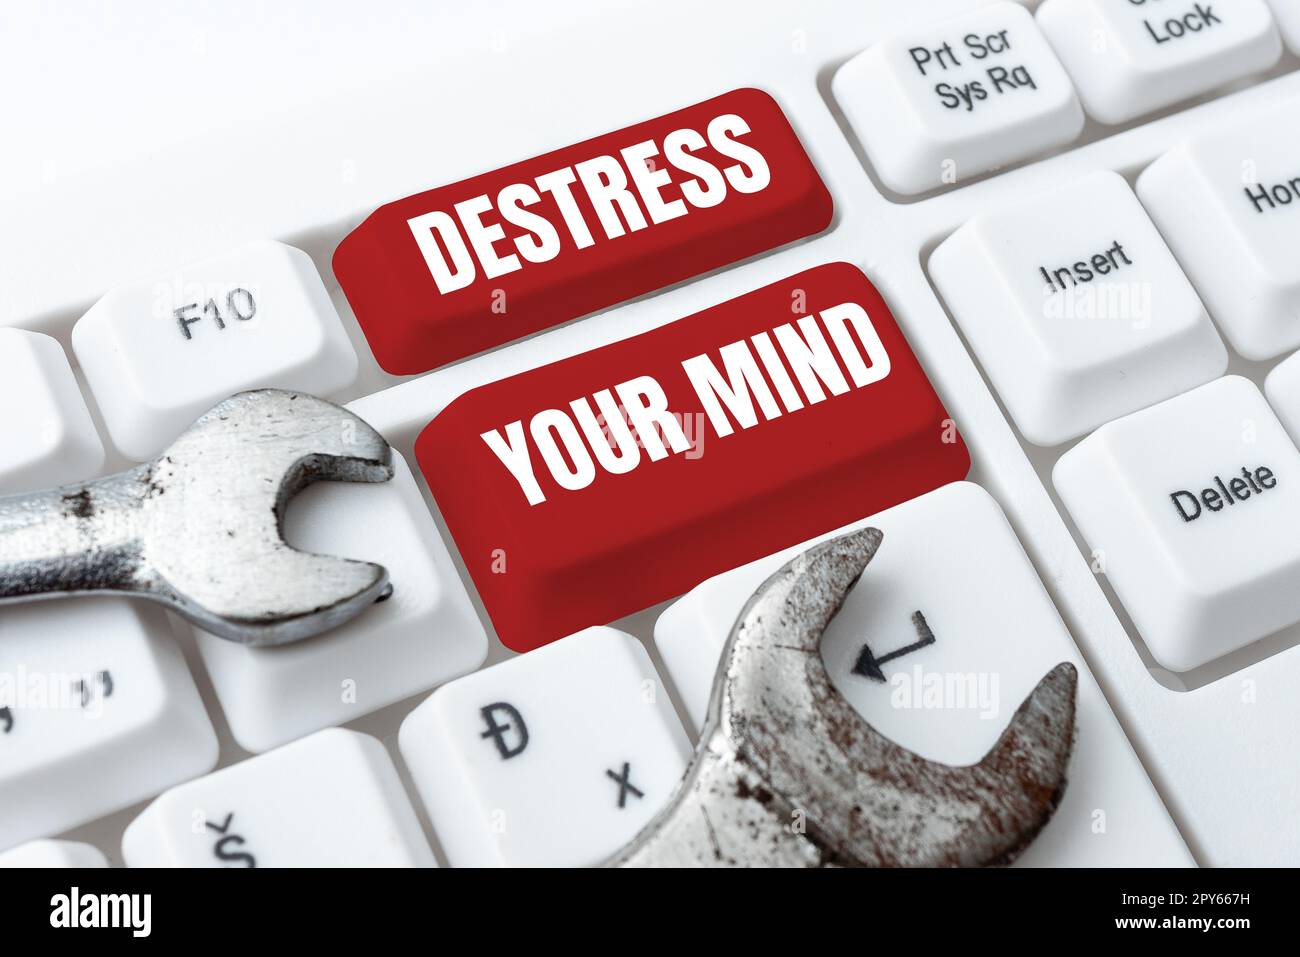 Testo scritto a mano Destress la vostra mente. Approccio aziendale per rilasciare la tensione mentale, ridurre lo stress Foto Stock